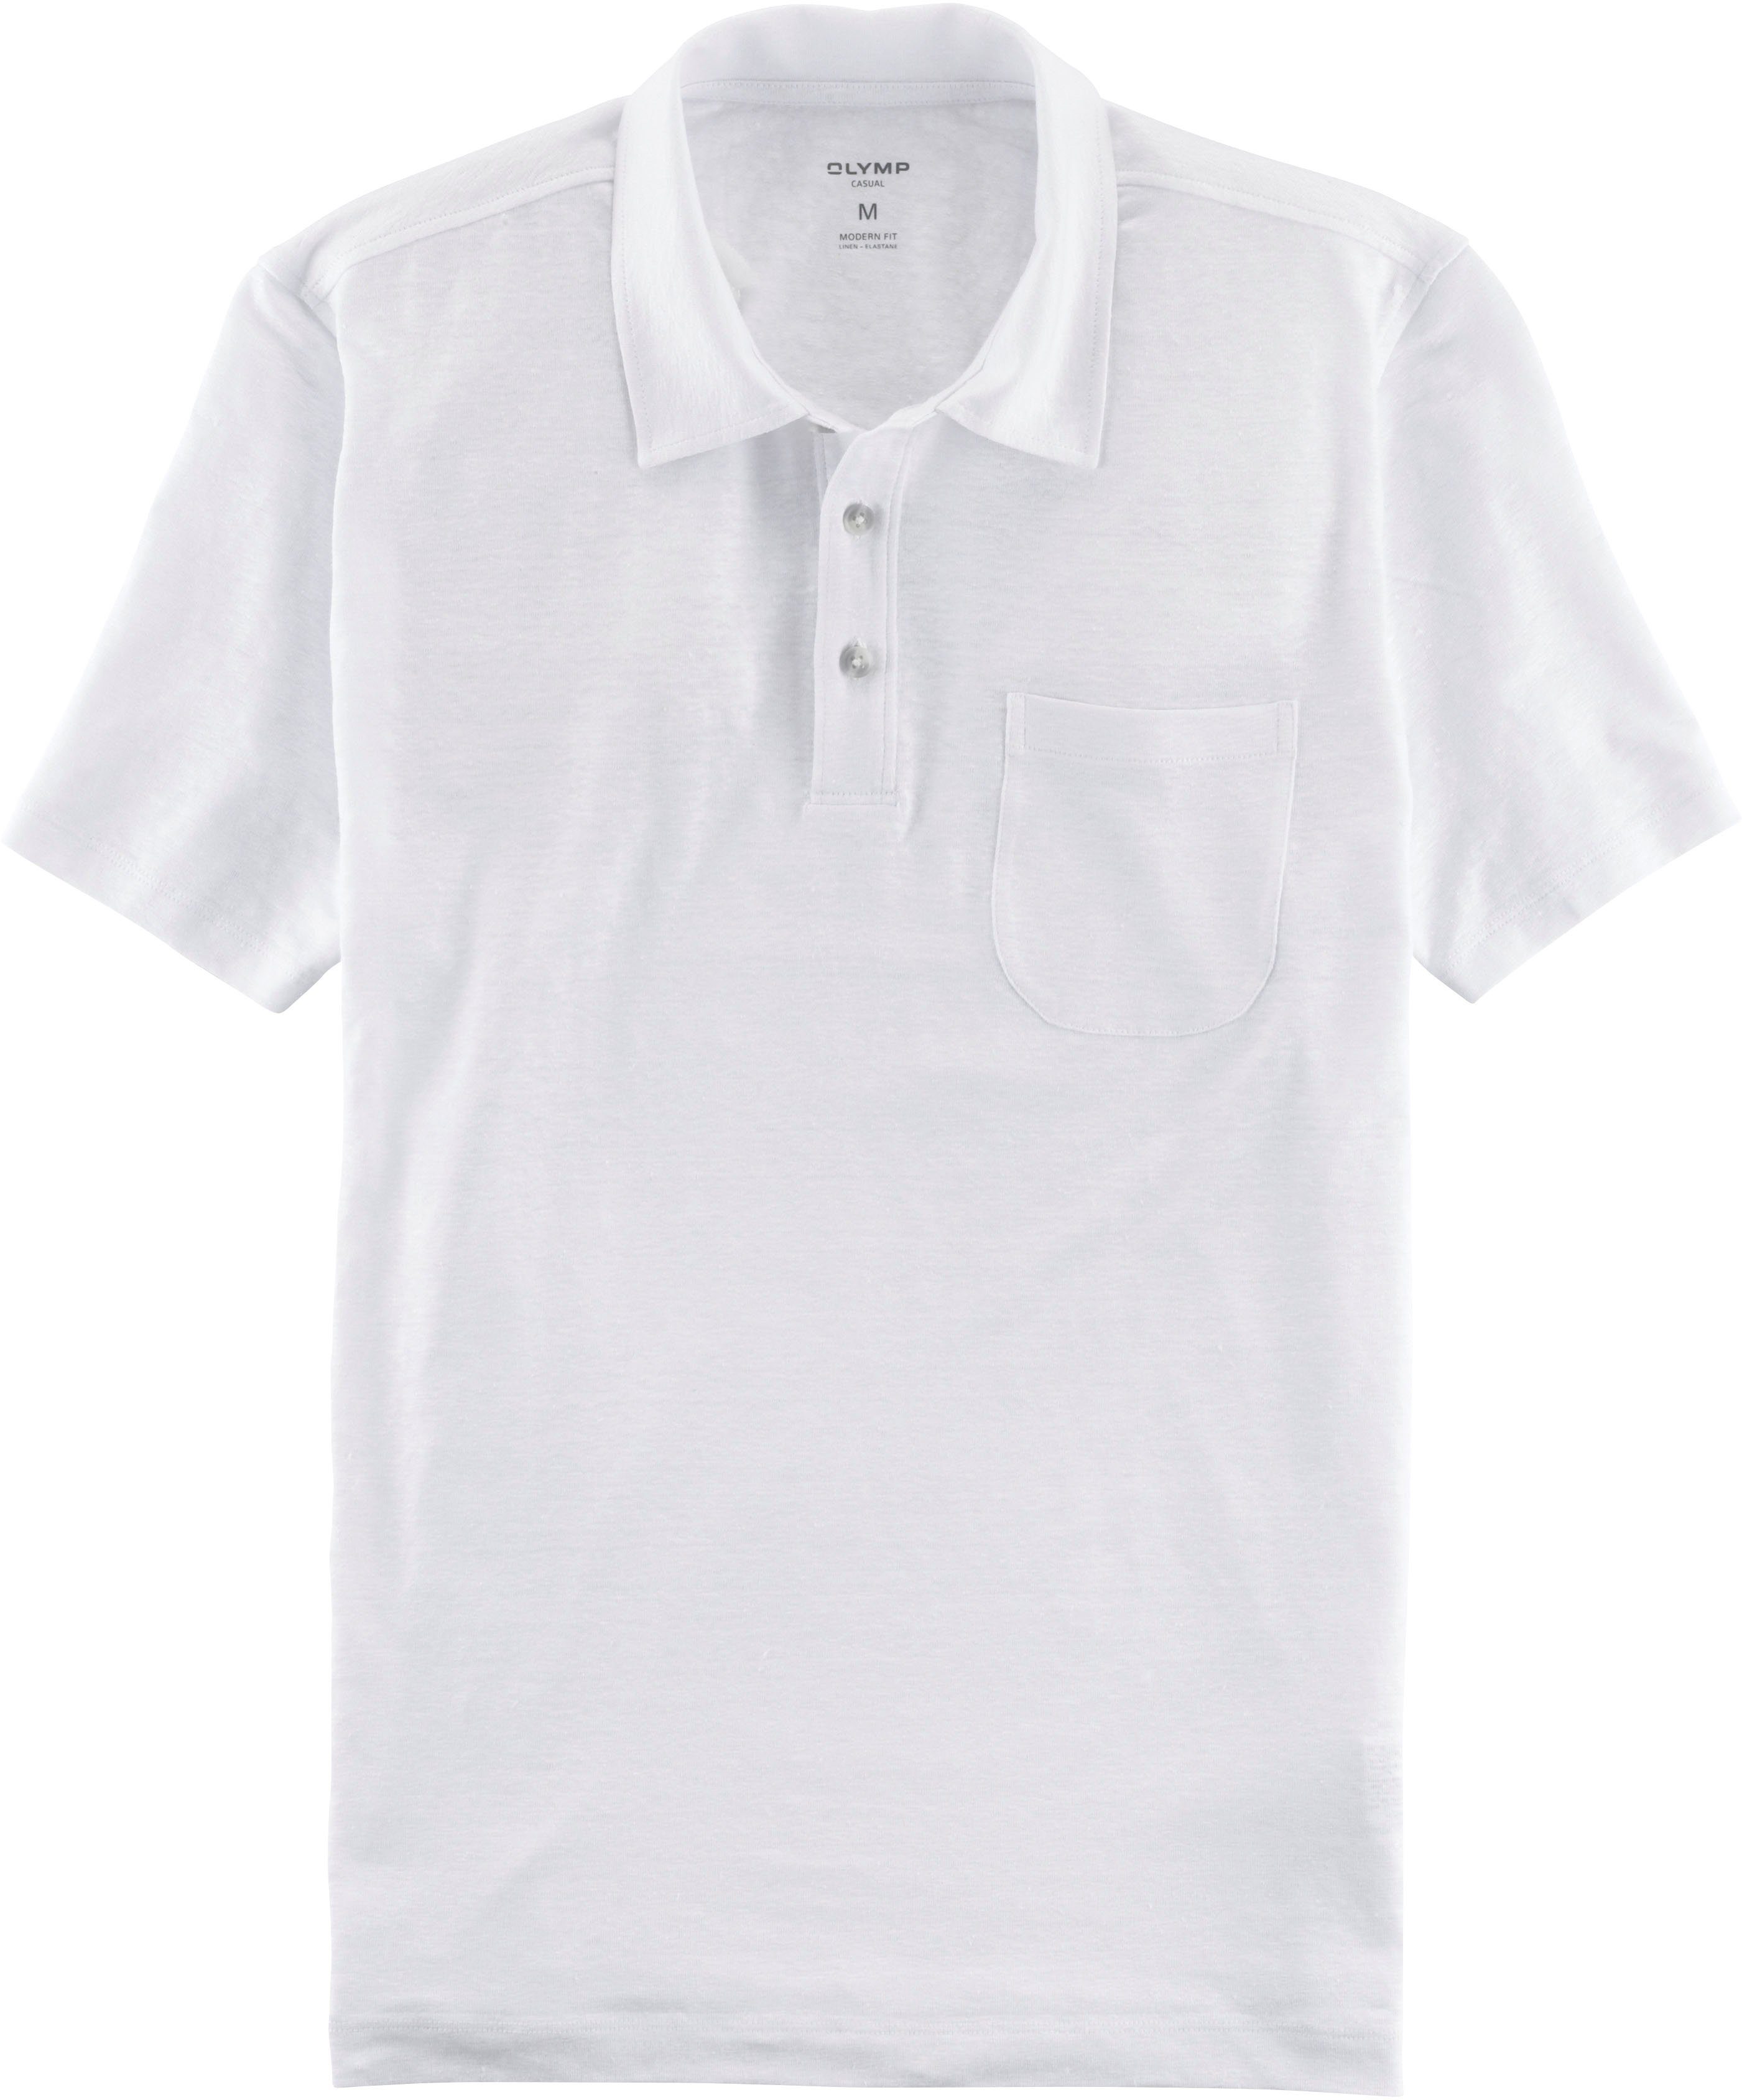 OLYMP Poloshirt im Hemden-Look mit Leinen in sommerlicher Casual-Optik weiß